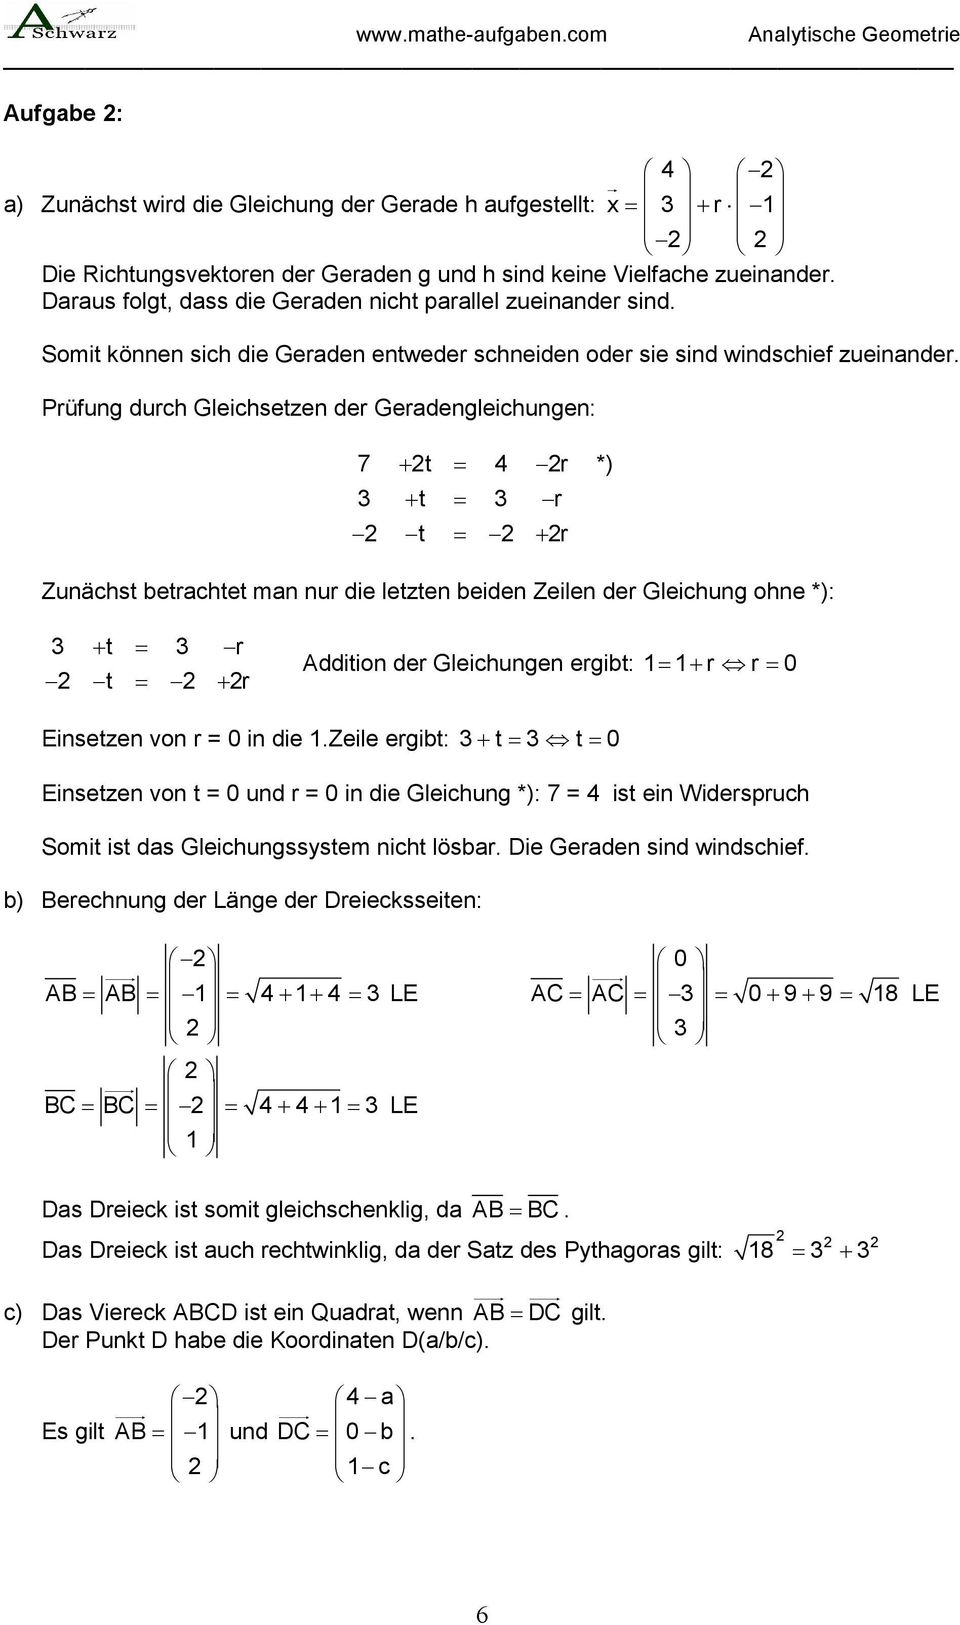 Prüfung durch Gleichsetzen der Geradengleichungen: 7 + t = 4 r + t = r t = + r *) Zunächst betrachtet man nur die letzten beiden Zeilen der Gleichung ohne *): + t = r t = + r Addition der Gleichungen